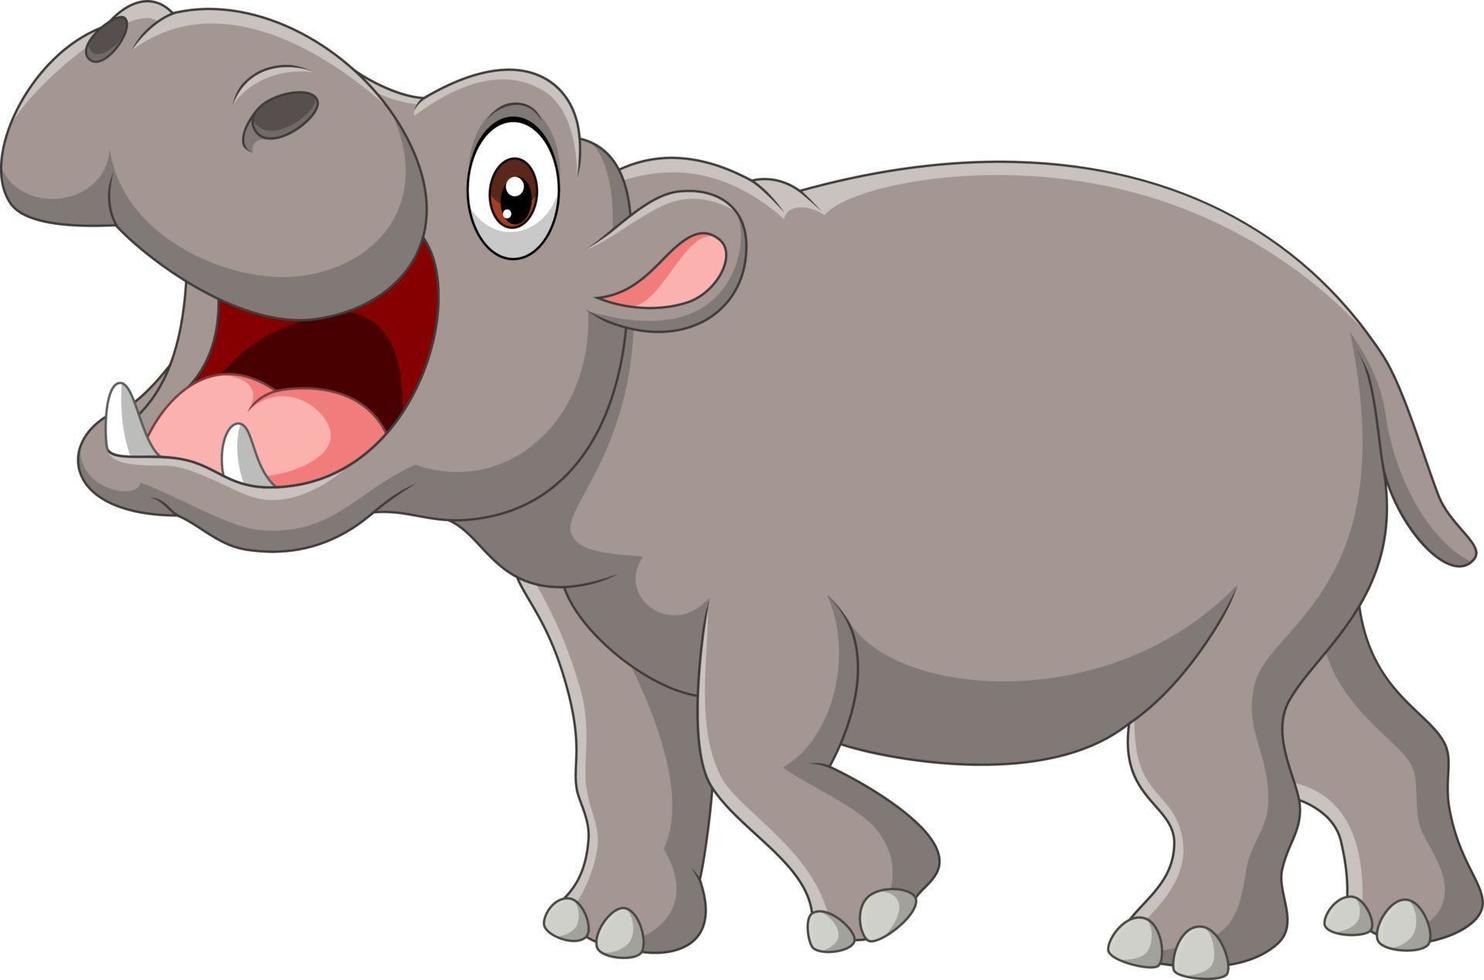 hippopotame de dessin animé avec la bouche ouverte vecteur